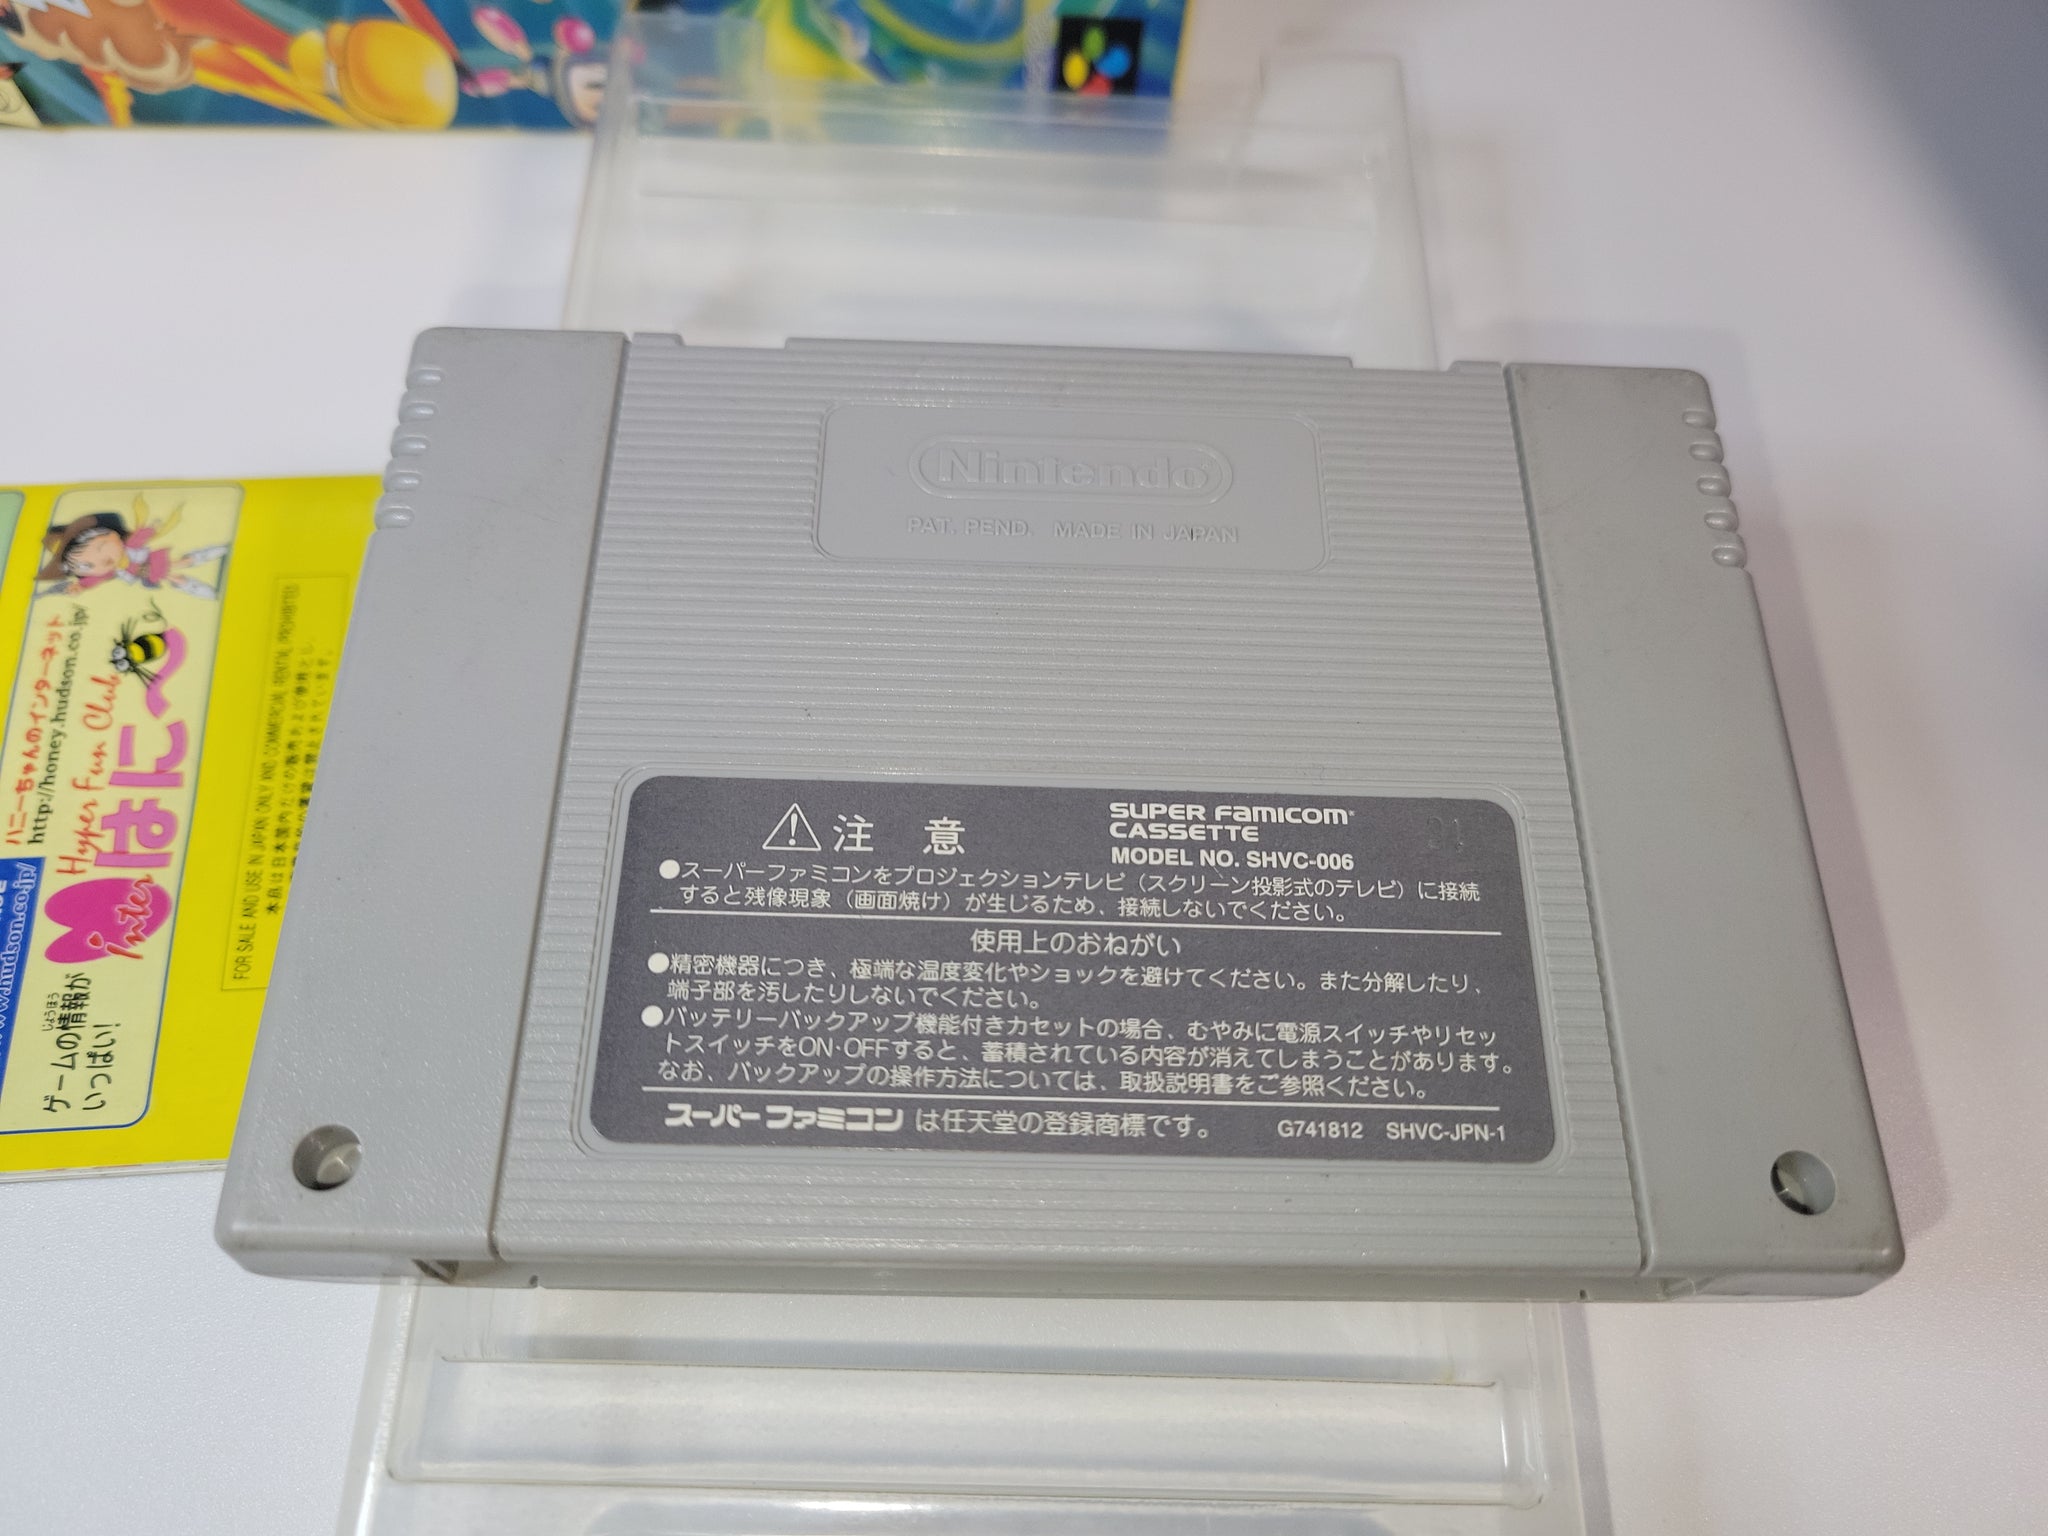 Super Bomberman 4 - Nintendo Sfc Super Famicom – The Emporium RetroGames  and Toys